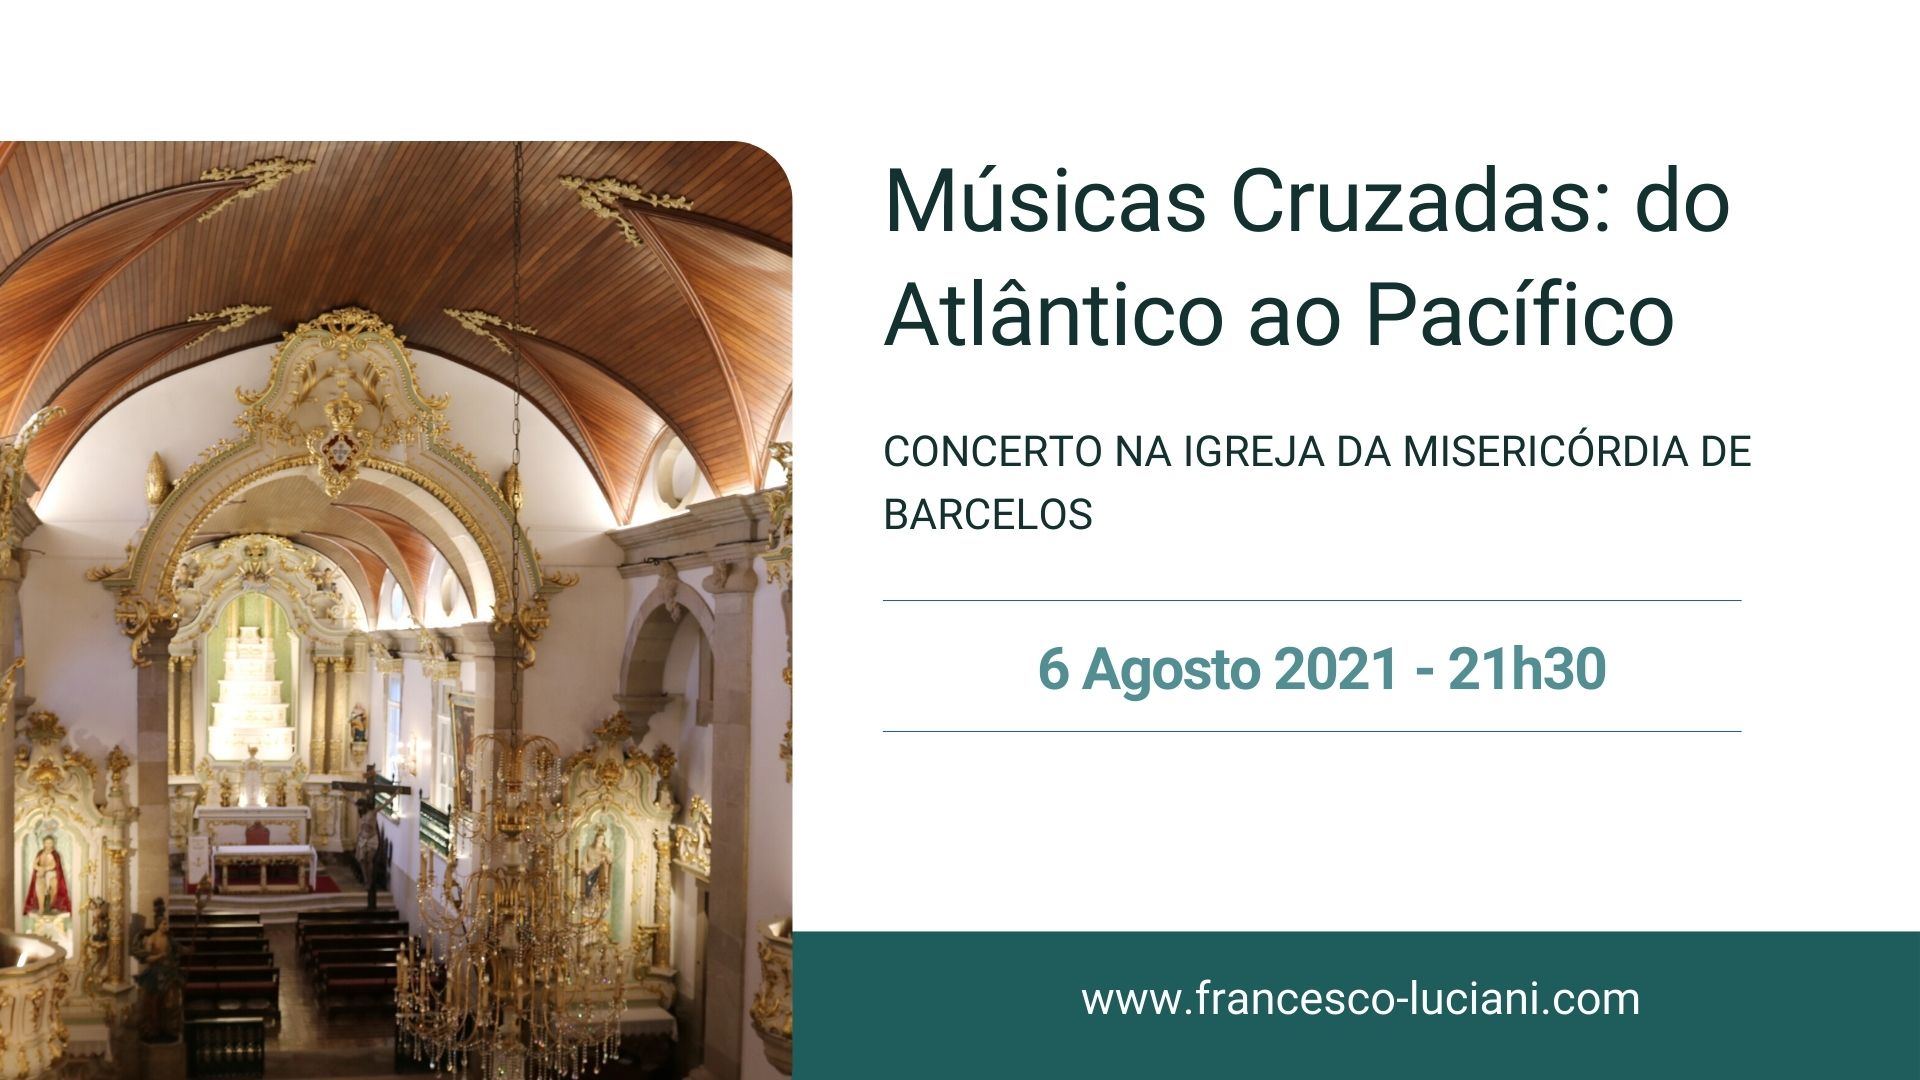 You are currently viewing A próxima etapa do tour”Músicas Cruzadas: do Atlântico ao Pacífico” é em Barcelos com um concerto na noite de 6 de Agosto